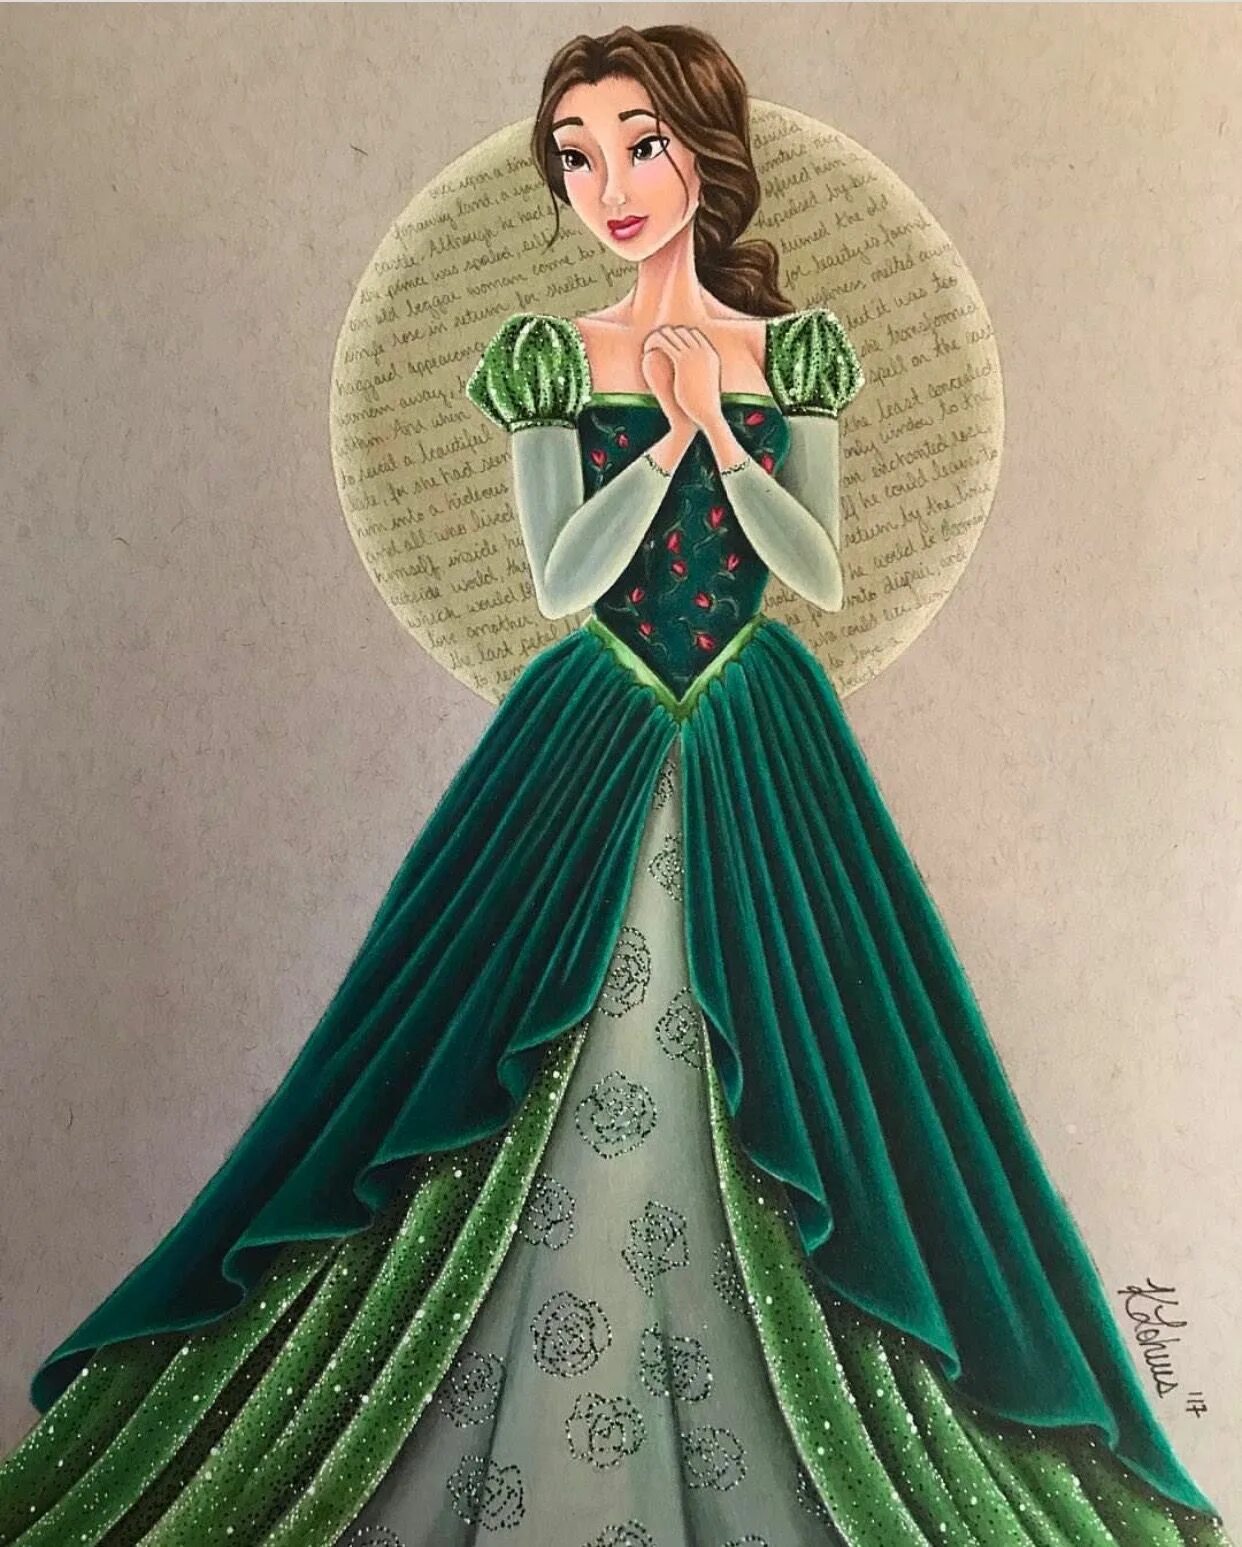 Дисней зеленый. Бель Дисней в зеленом платье. Белль принцесса Дисней в зелёном. Принцесса в зеленом платье. Диснеевские принцессы в зеленом платье.